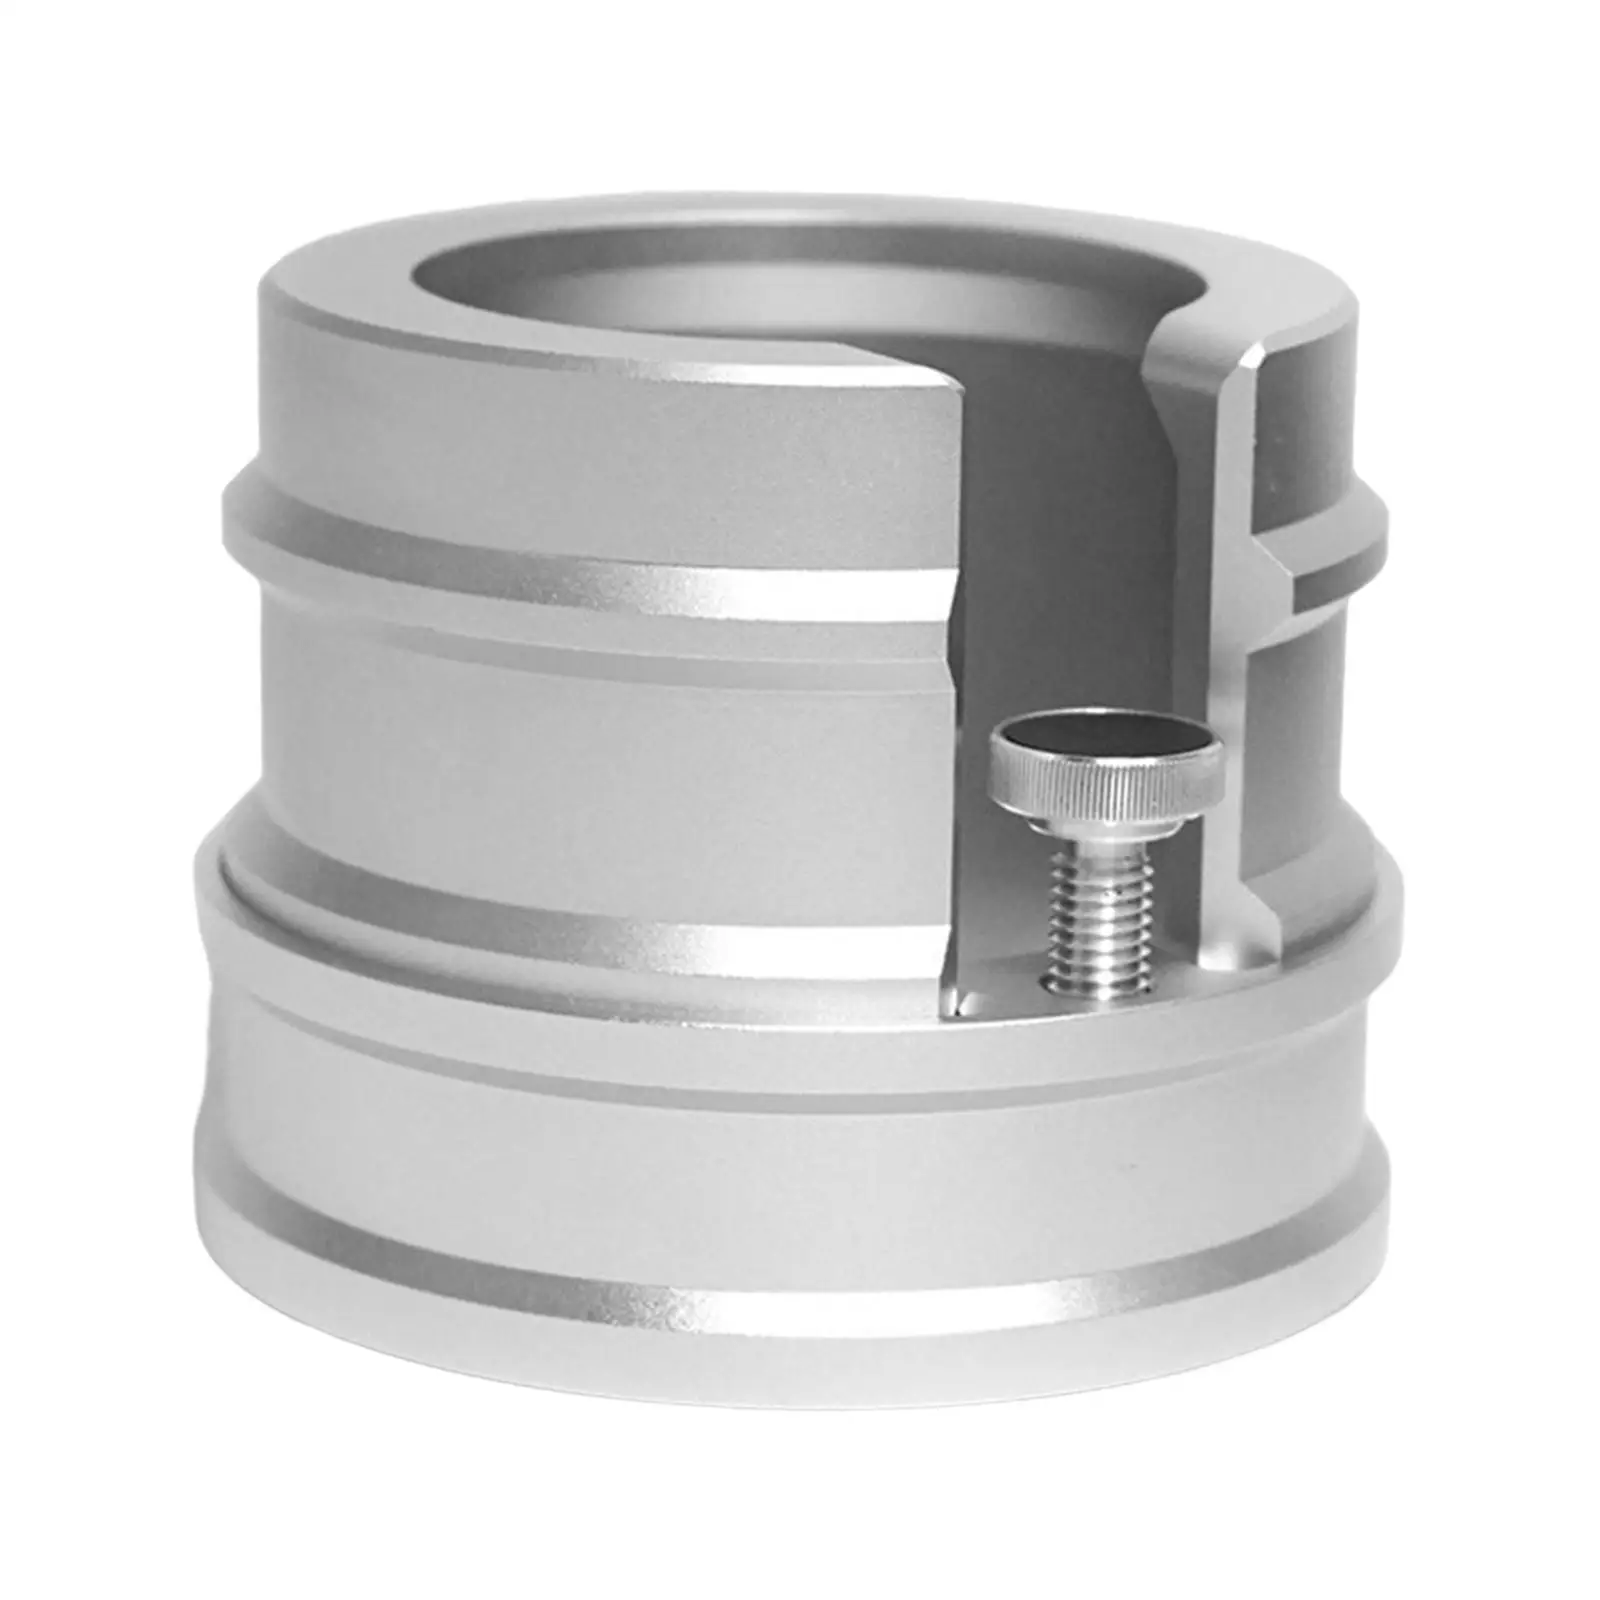 Espresso Portafilter Holder for 51/53/54/58mm Coffee Tamper Holder Aluminum Alloy for Home Restaurant Kitchen Cafe